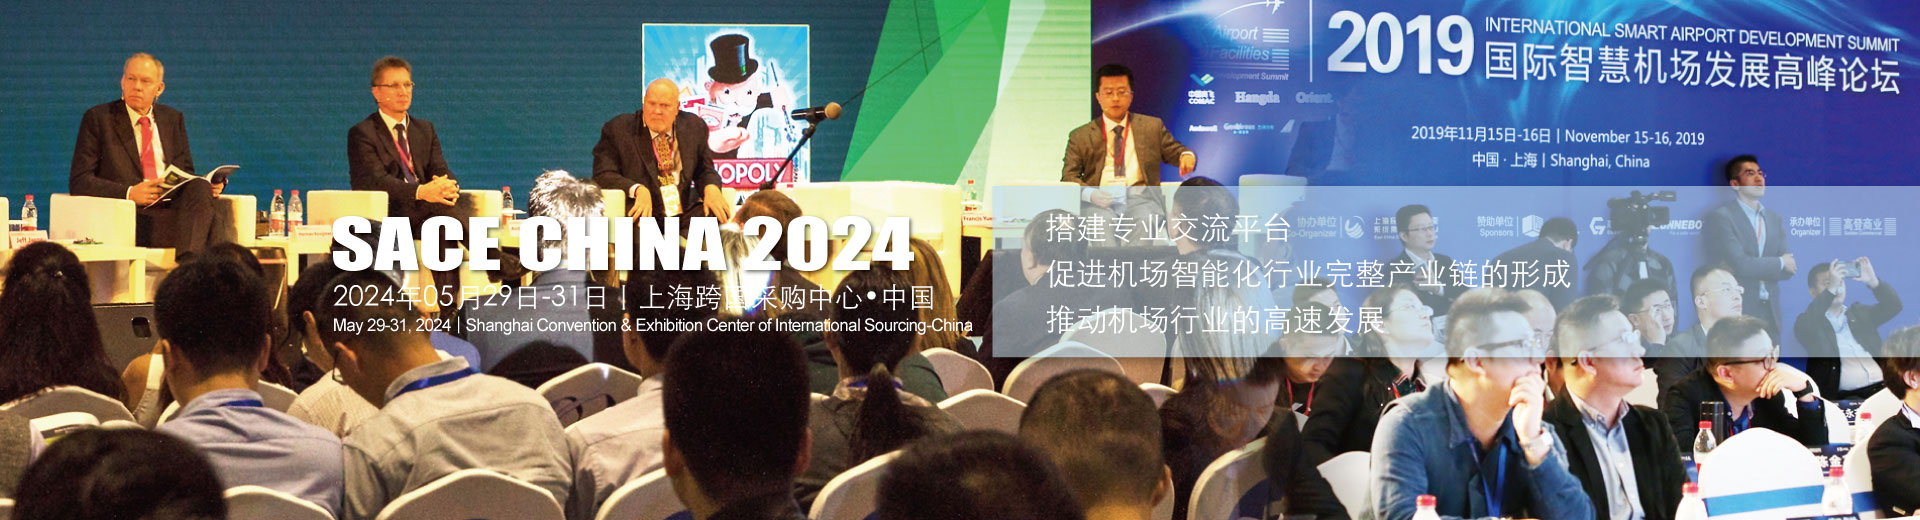 2024中国（上海）国际智慧机场建设与运营展览会